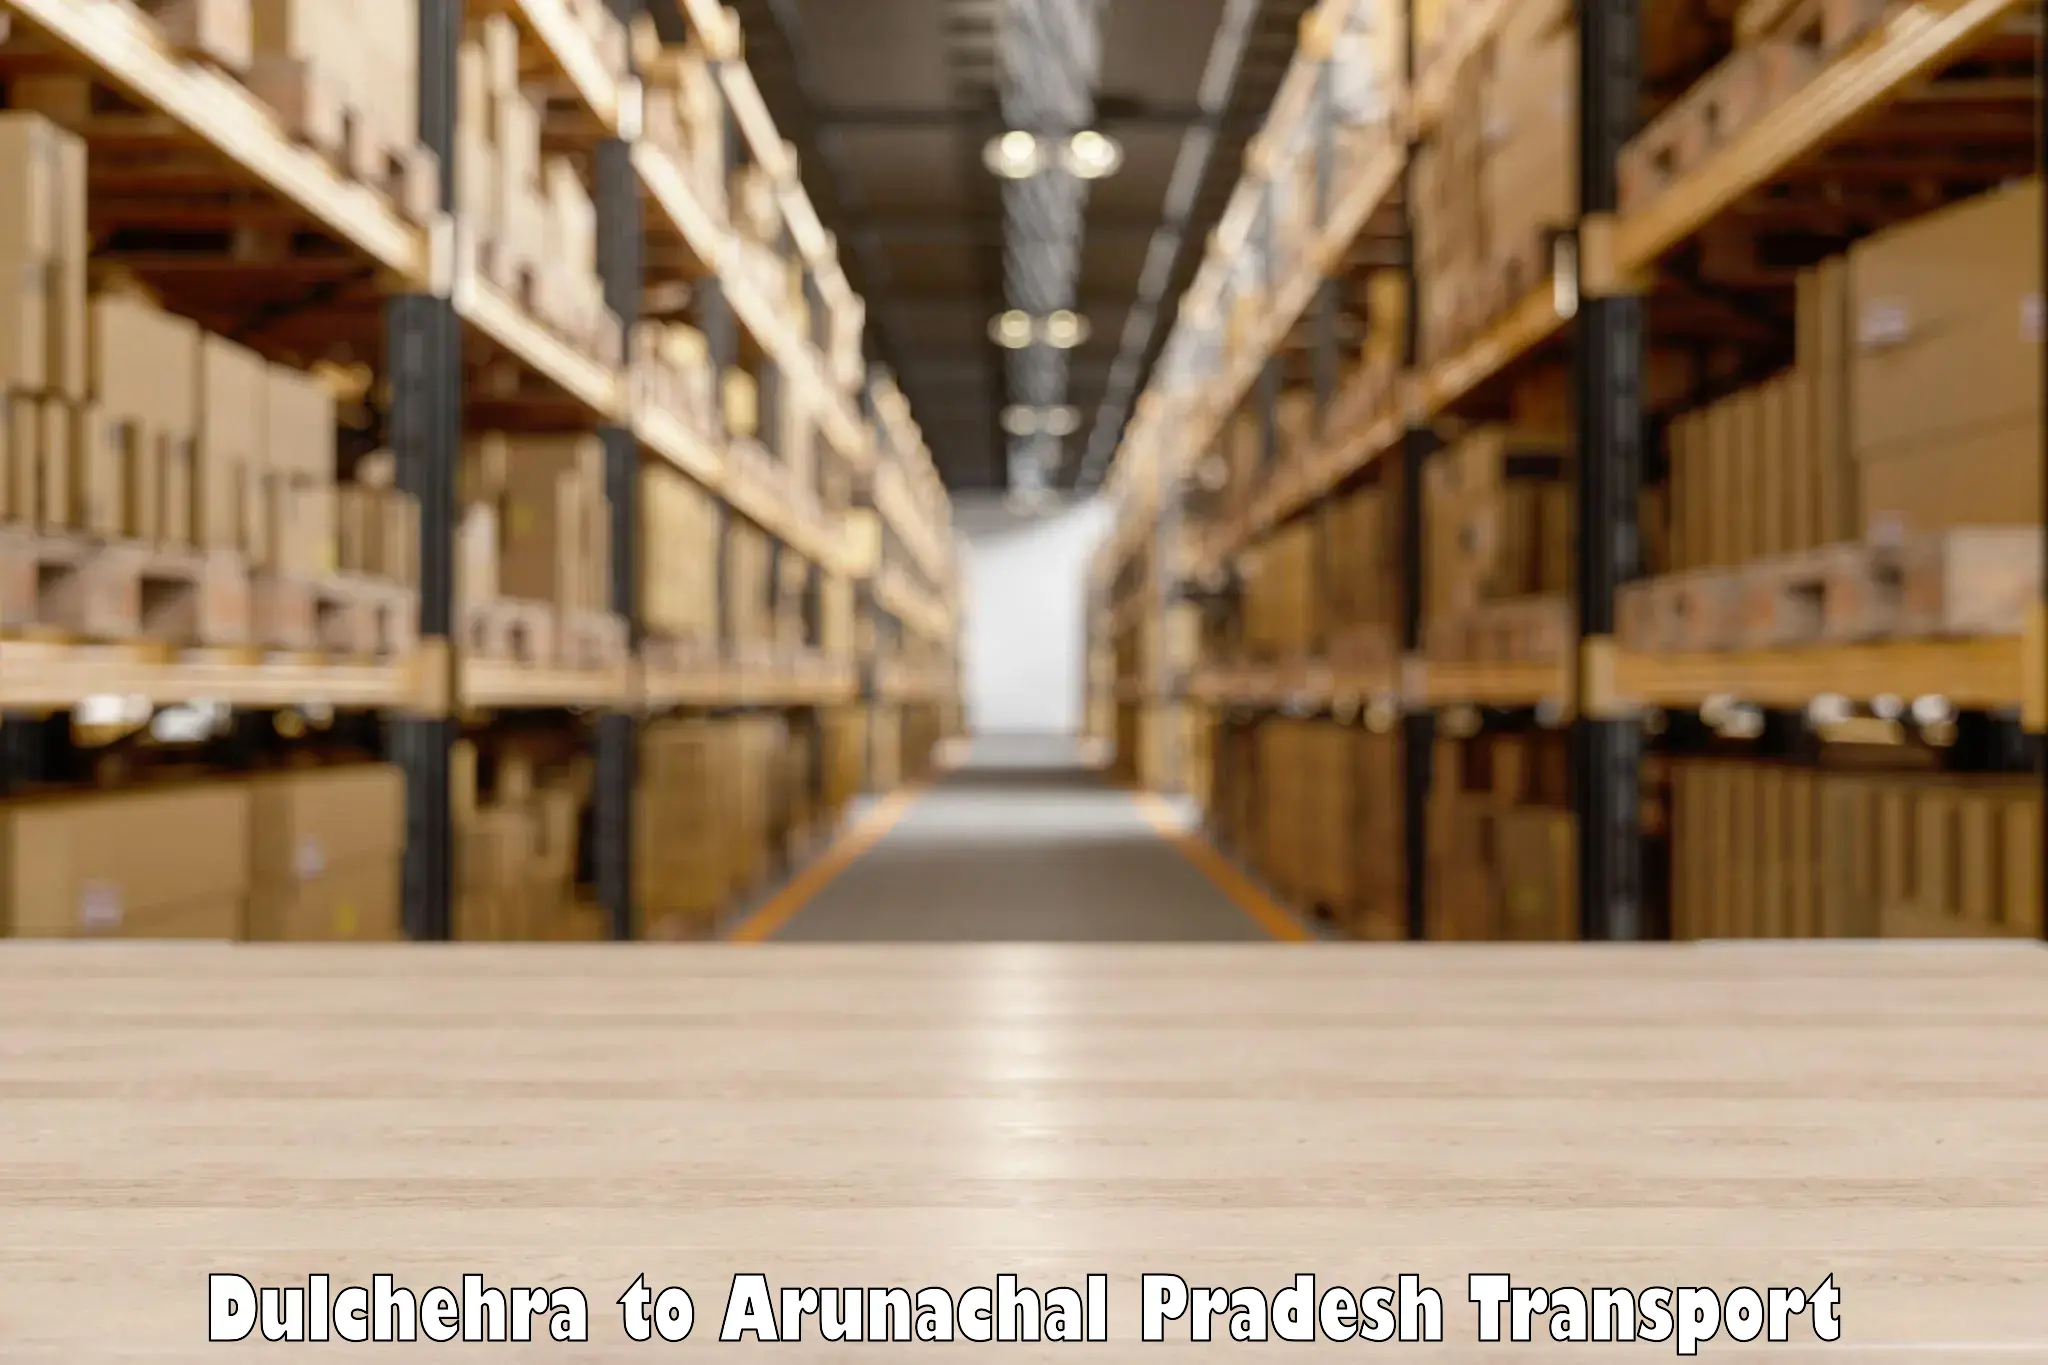 Truck transport companies in India Dulchehra to Itanagar